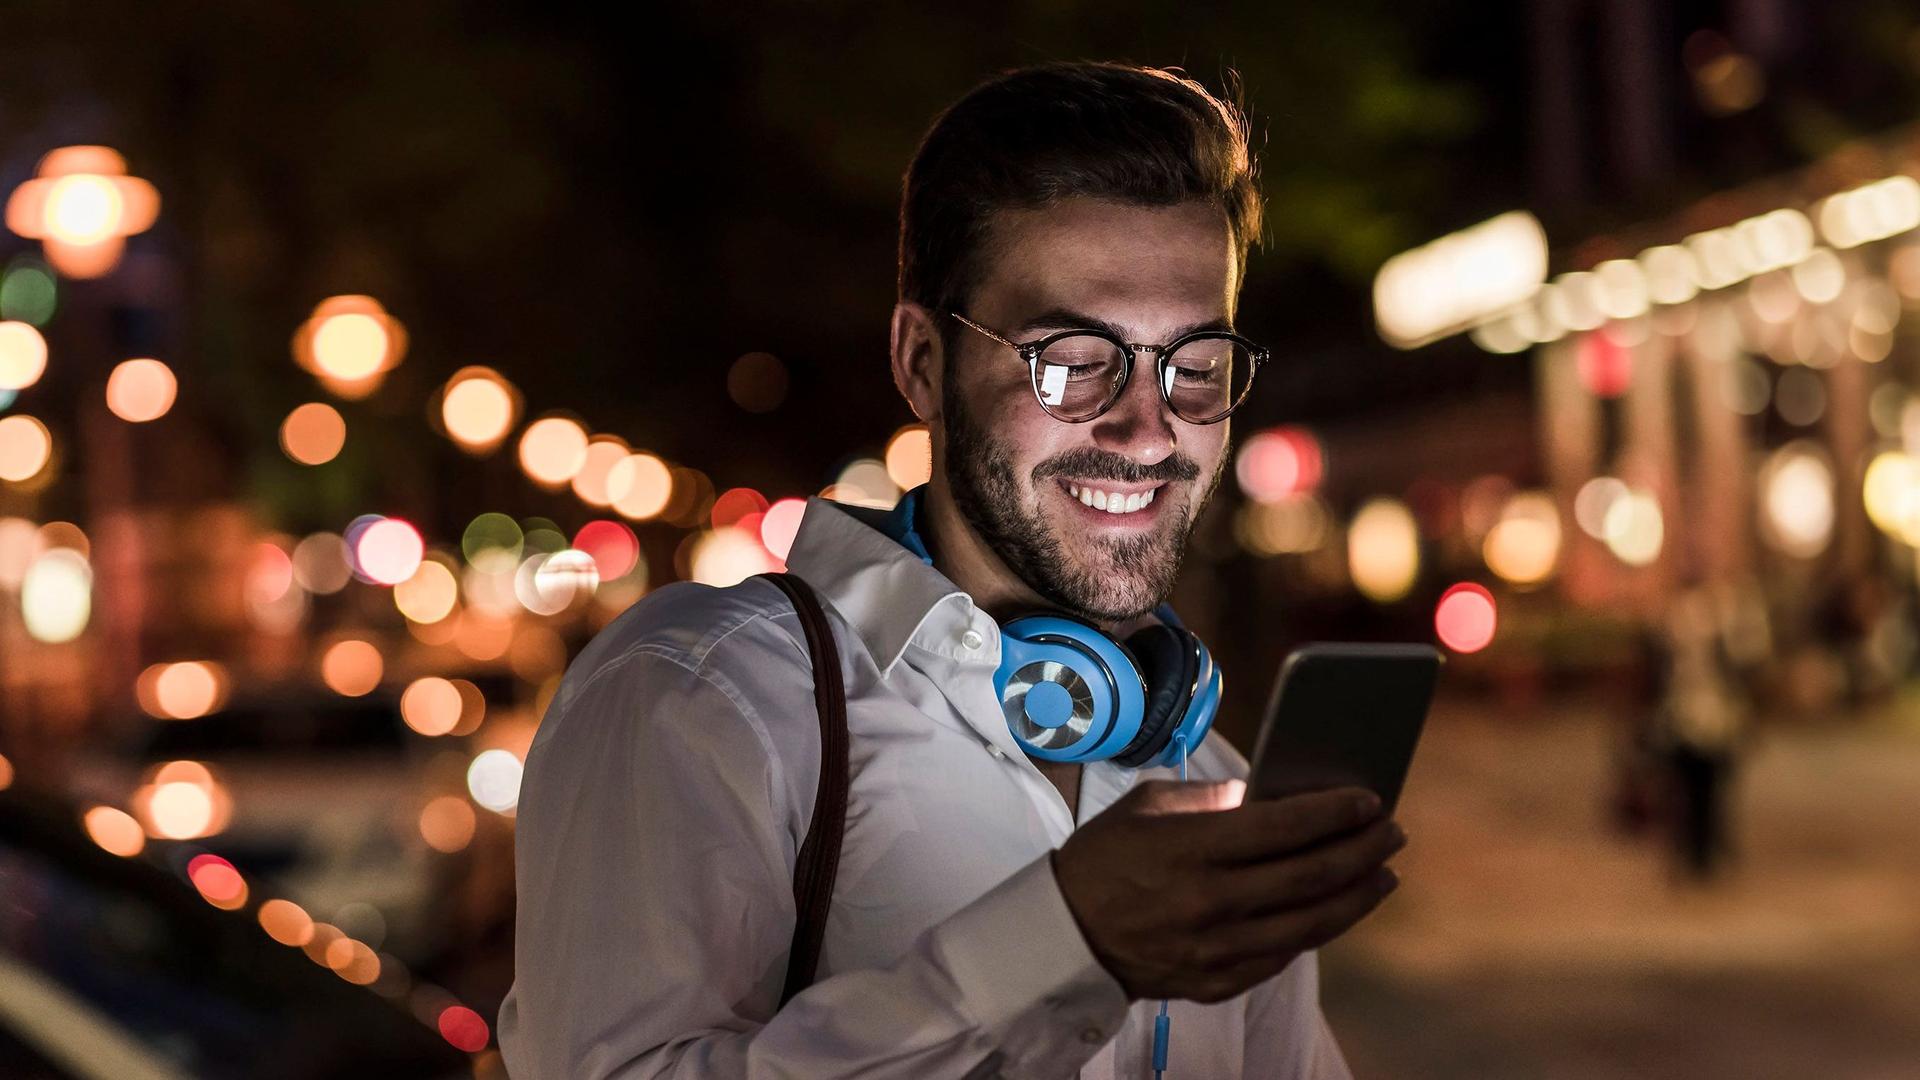 Ein junger Mann im weißen Hemd und türkisen Kopfhörern um den Hals, schaut glücklich auf den Display seines Smartphones. Es ist Abend und sein Gesicht wird vom Displaylicht angeleuchtet.